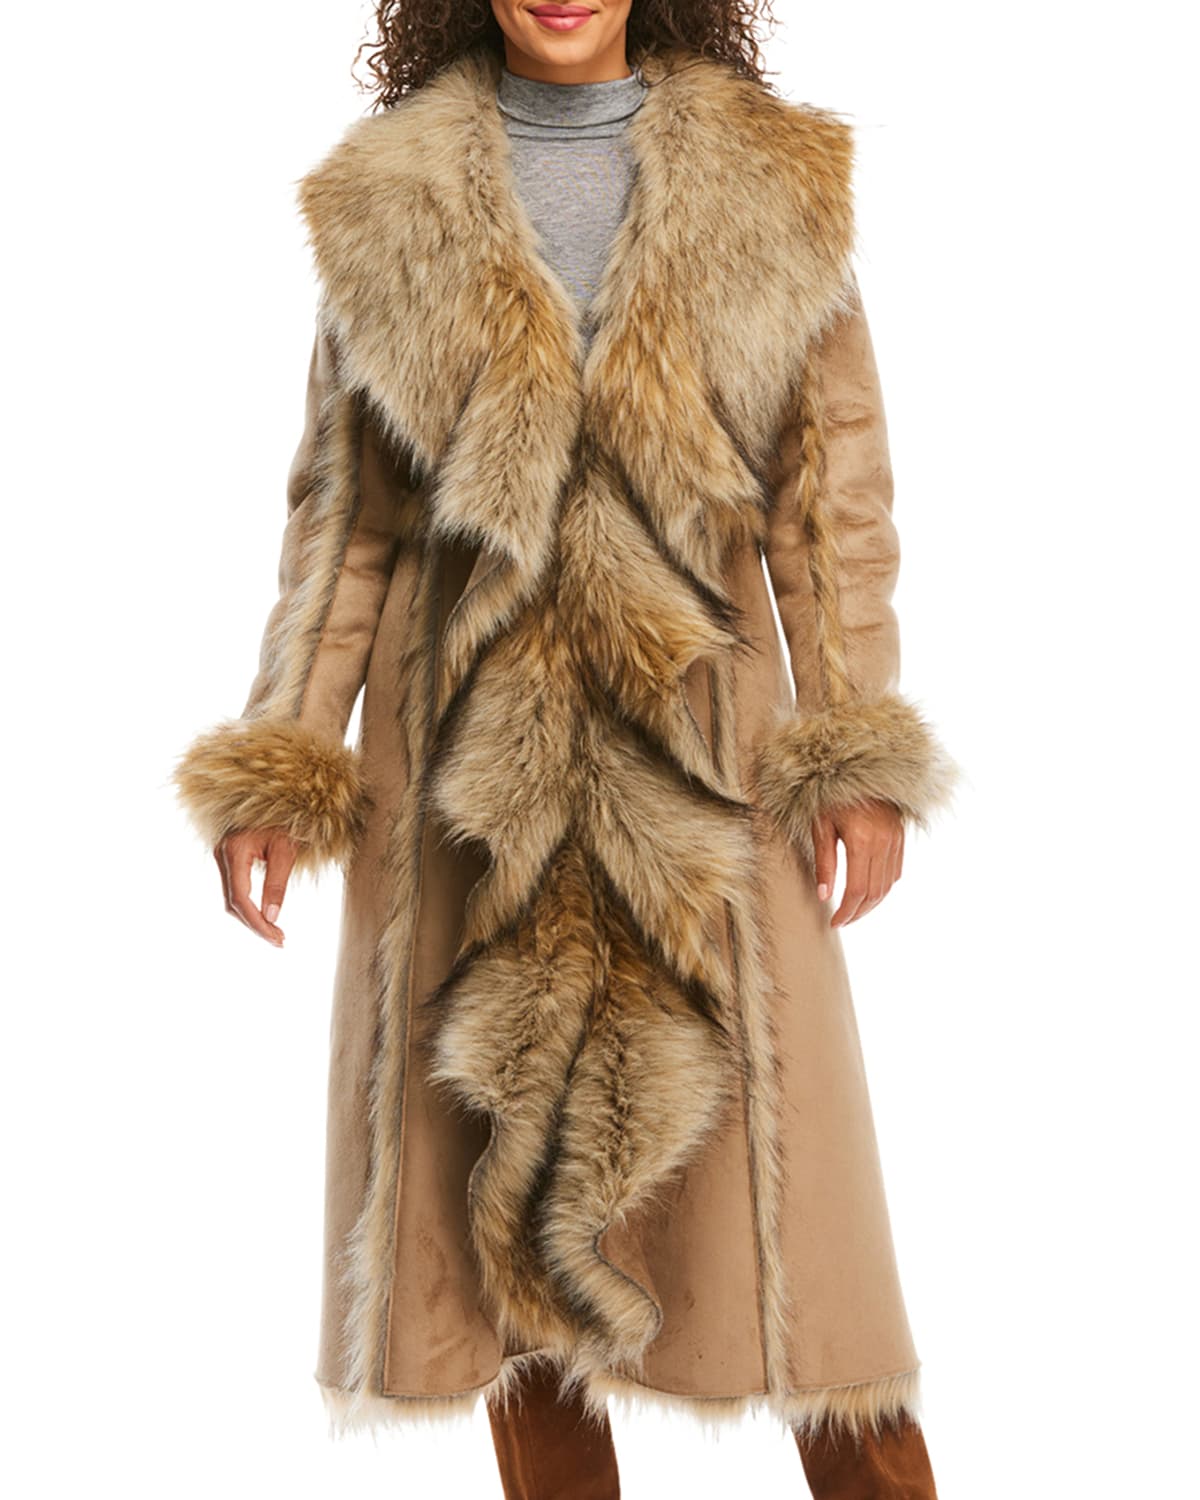 Fabulous Furs Cascade Faux Suede Faux Fur-Trim Full Coat